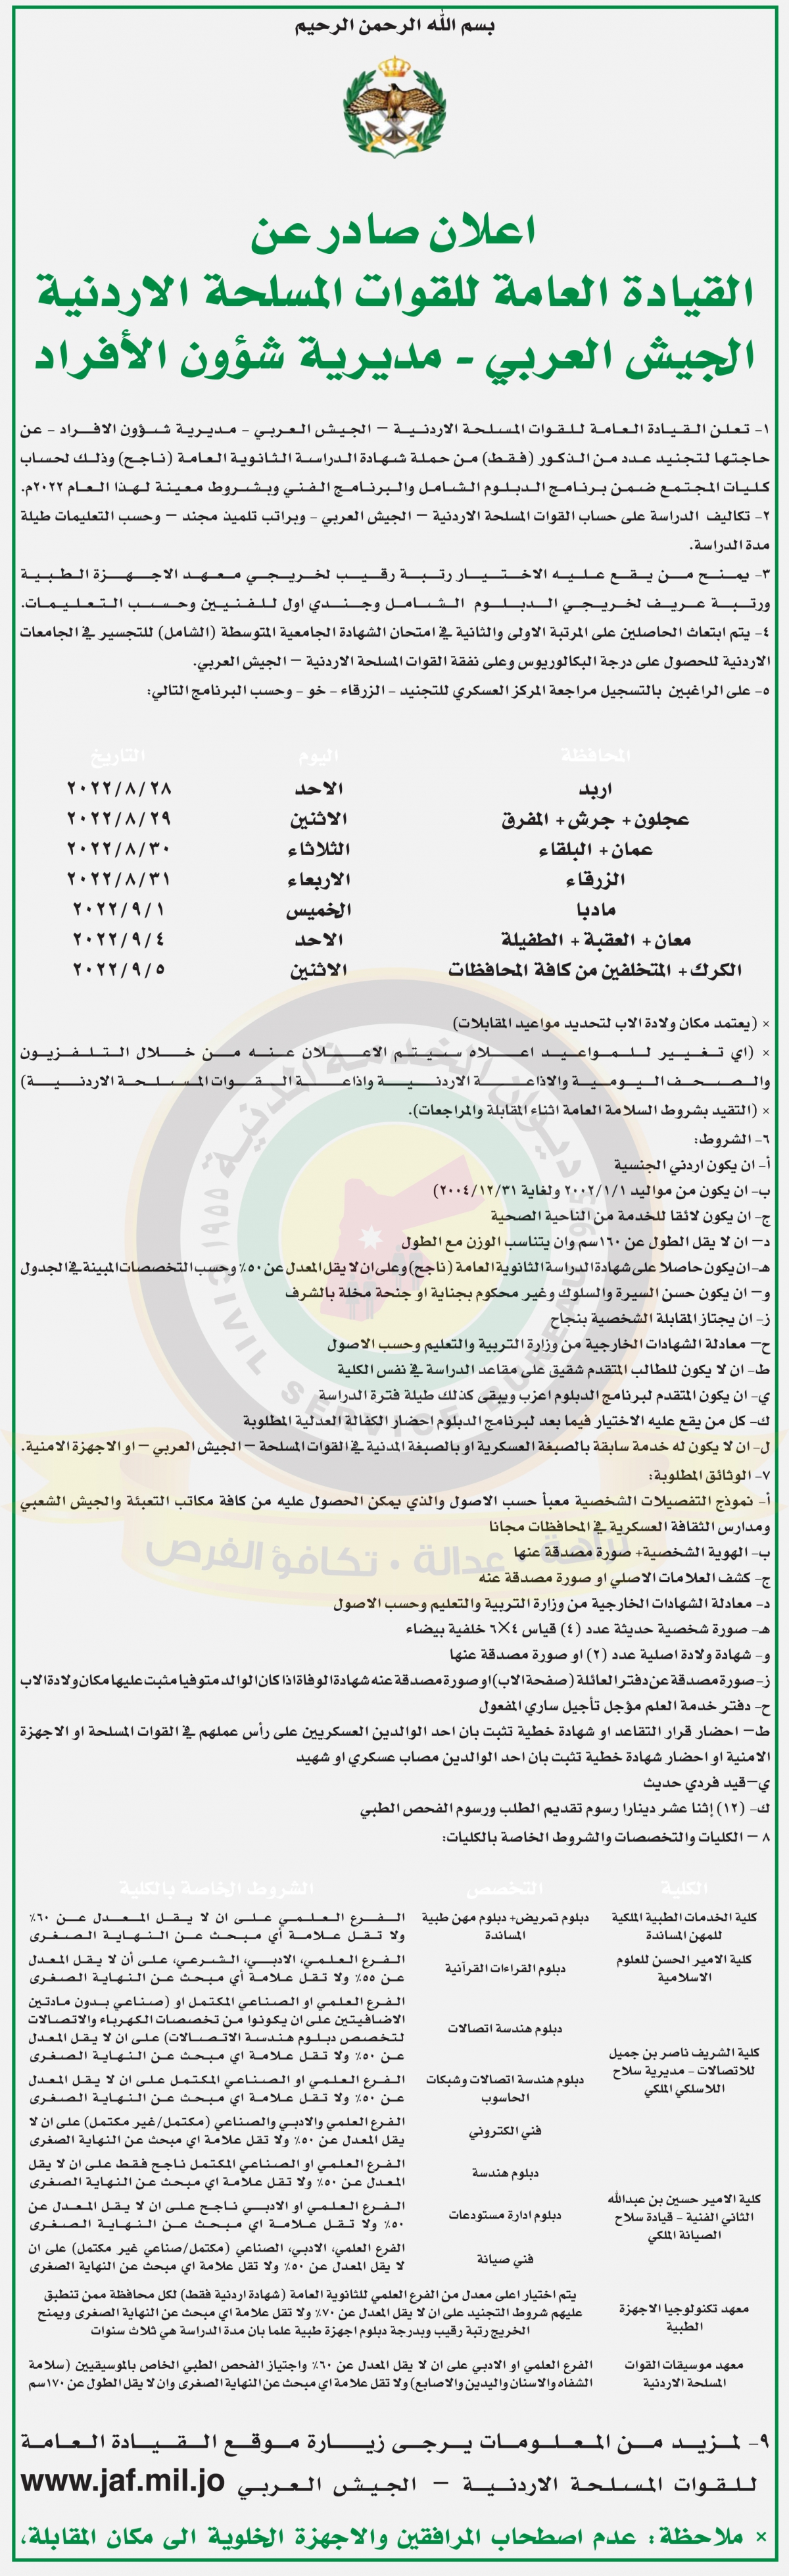 اعلان وظائف شاغرة صادرعن القيادة العامة للقوات المسلحة الاردنية